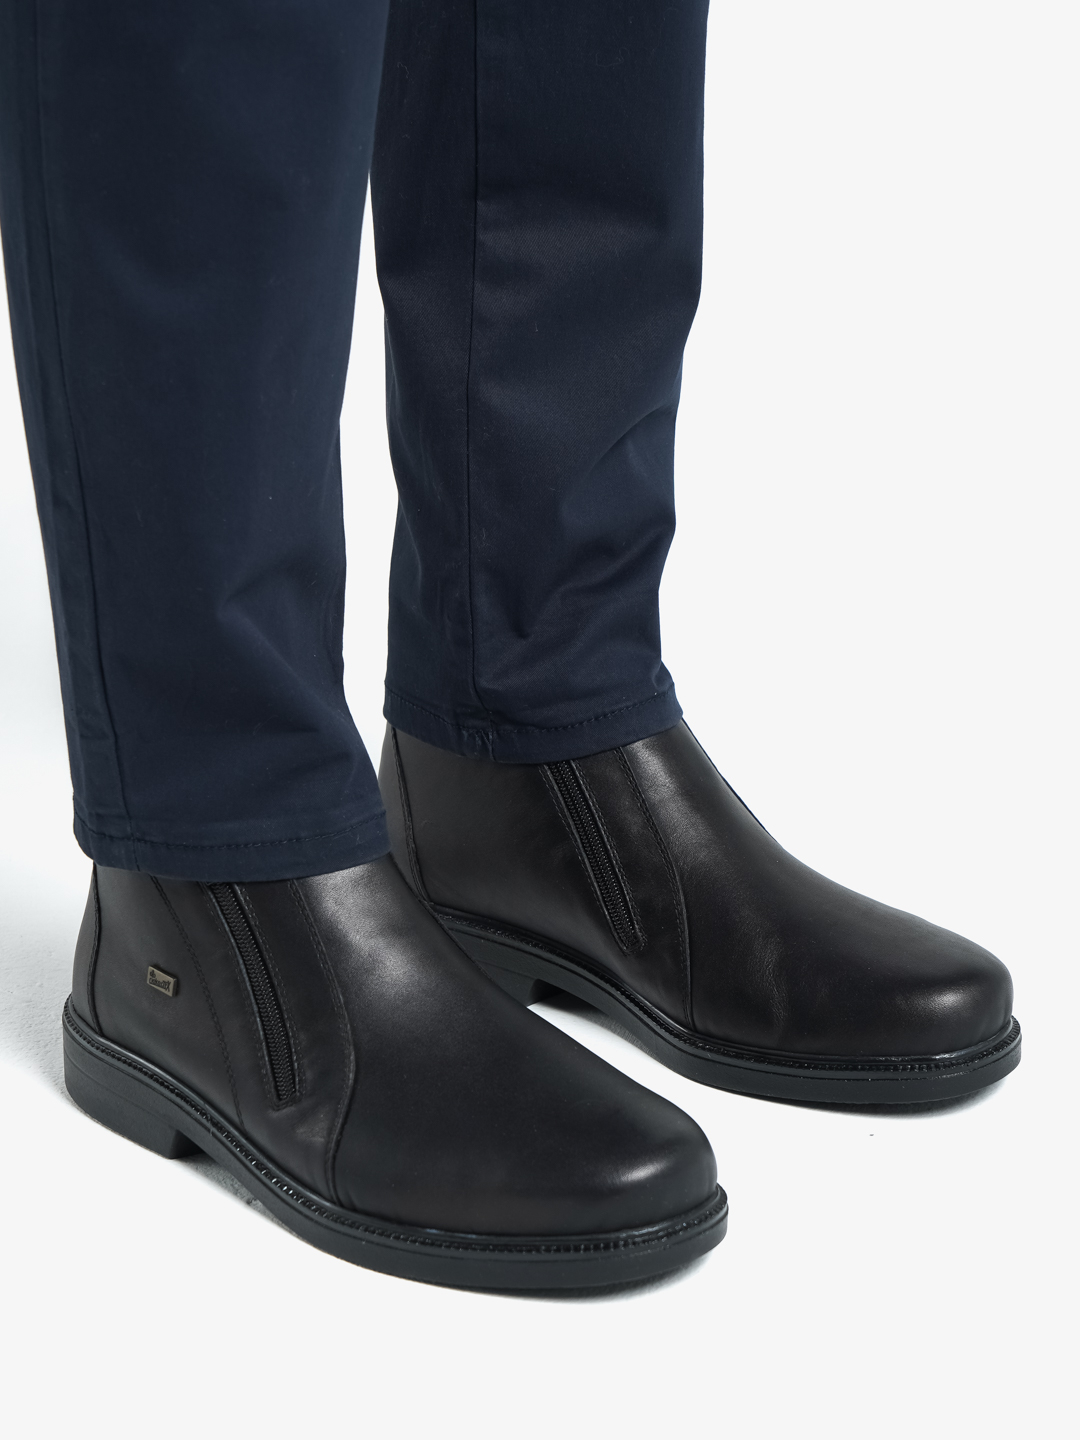 Ботинки мужские зимние, Rieker купить по цене 7760 ₽ в интернет-магазинеKazanExpress